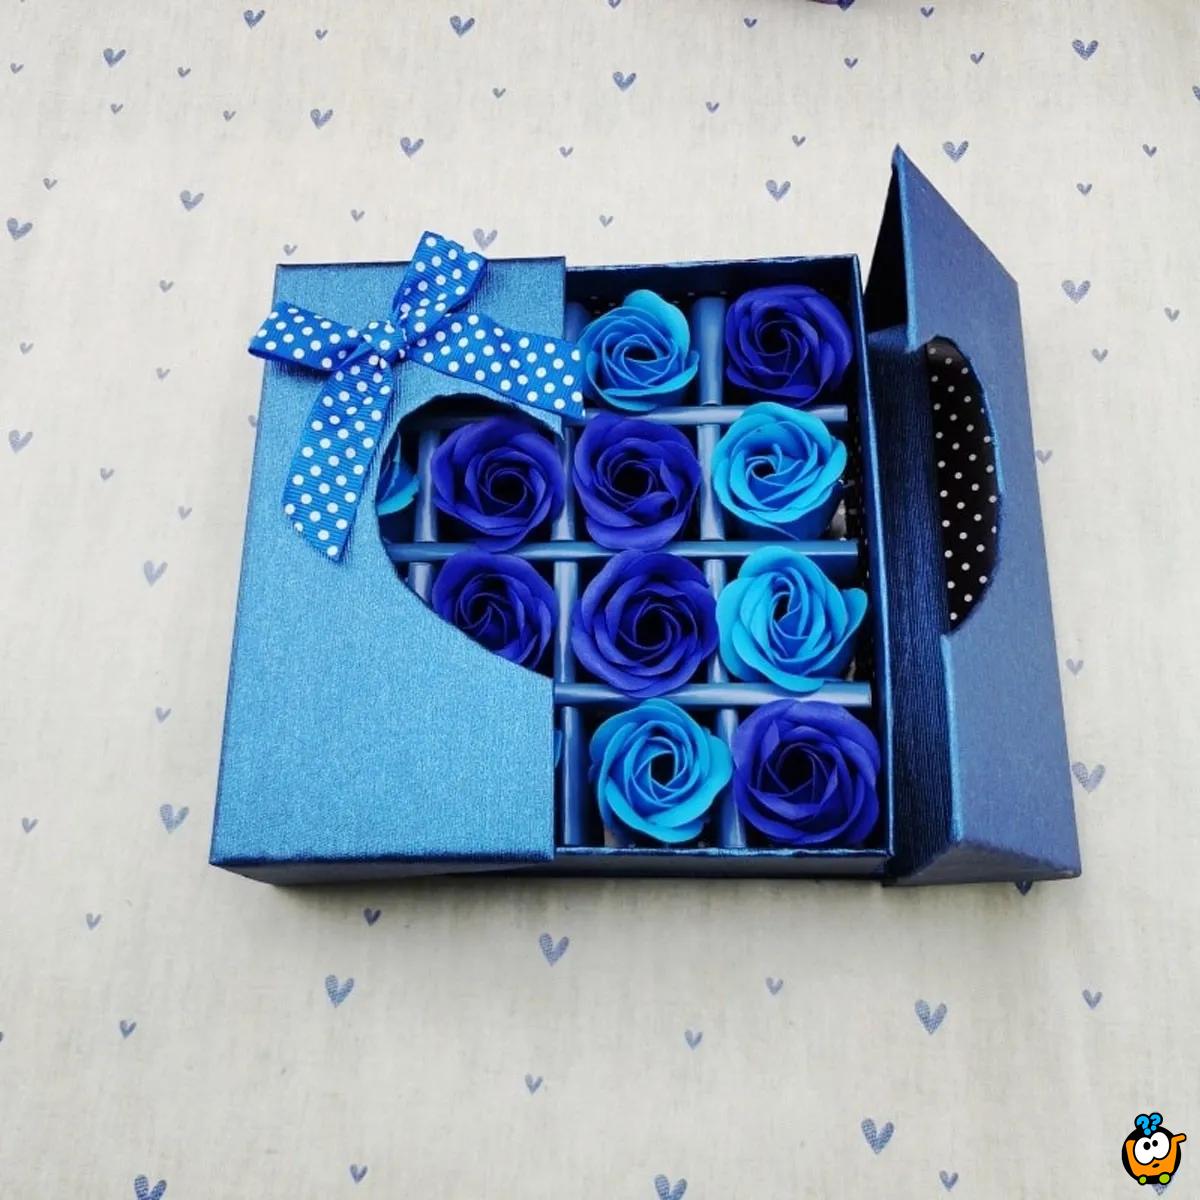 Poklon set ukrasnih sapuna - Plava ruža